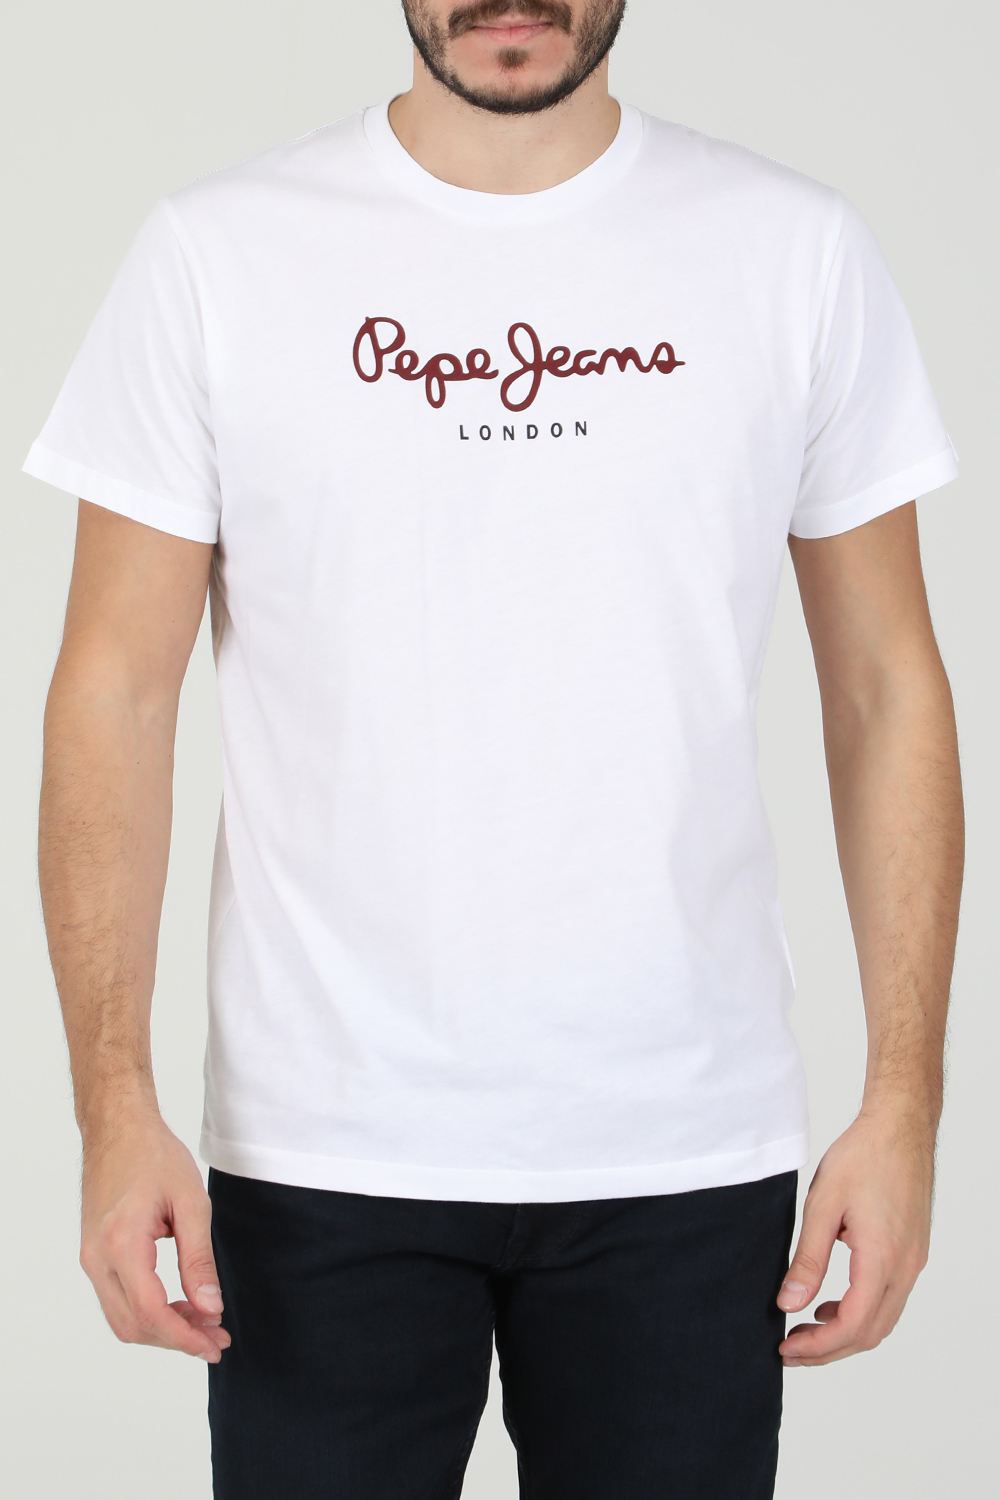 Ανδρικά/Ρούχα/Μπλούζες/Κοντομάνικες PEPE JEANS - Ανδρική κοντομάνικη μπλούζα PEPE JEANS NOS EGGO λευκή